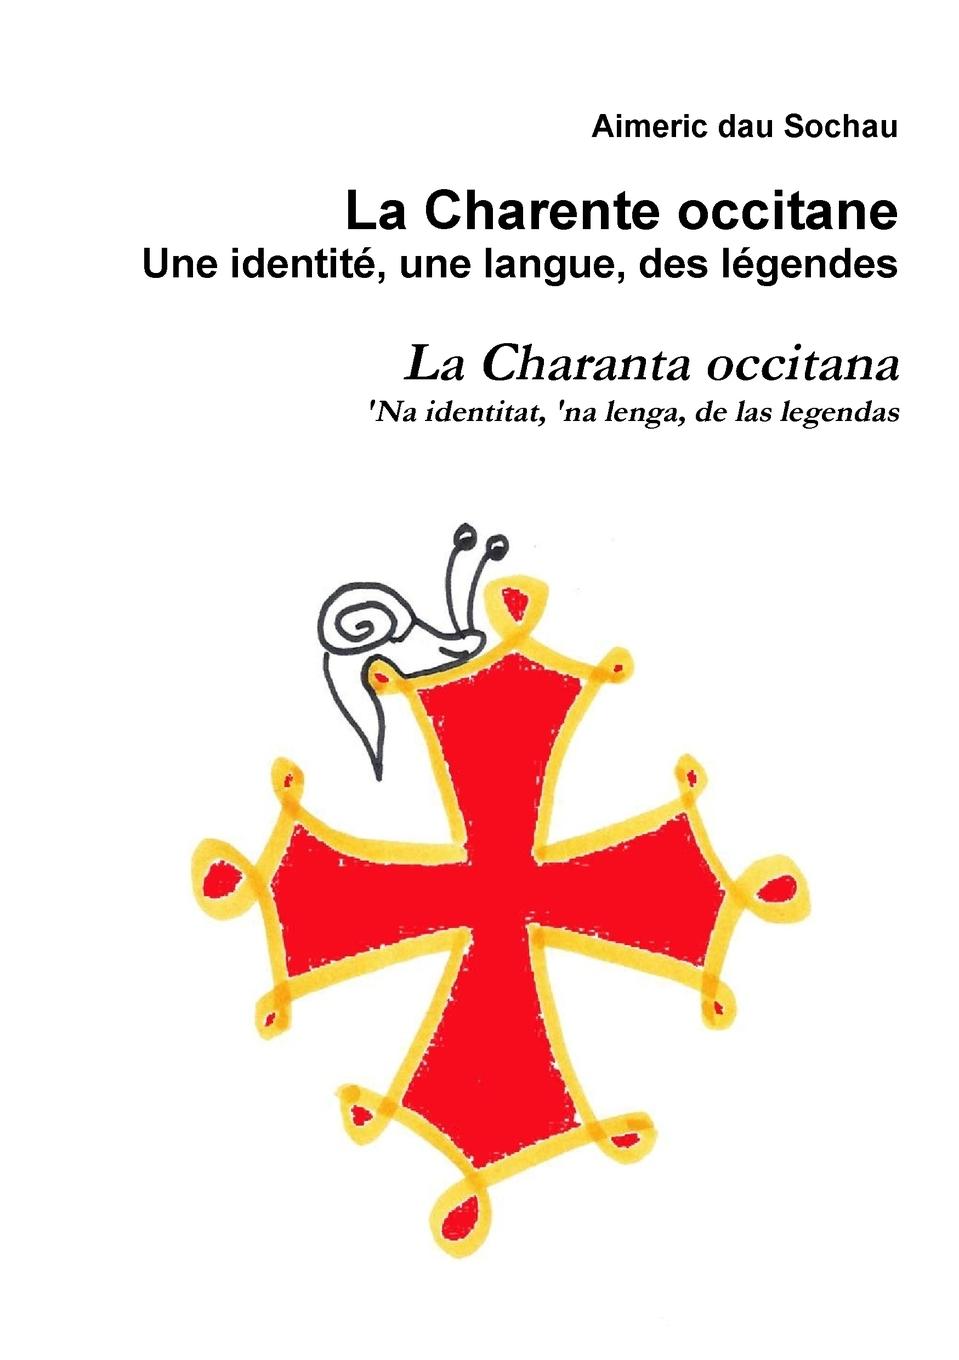 La Charente occitane, une identitÃ©, une langue, des lÃ©gendes - Dau Sochau, Aimeric